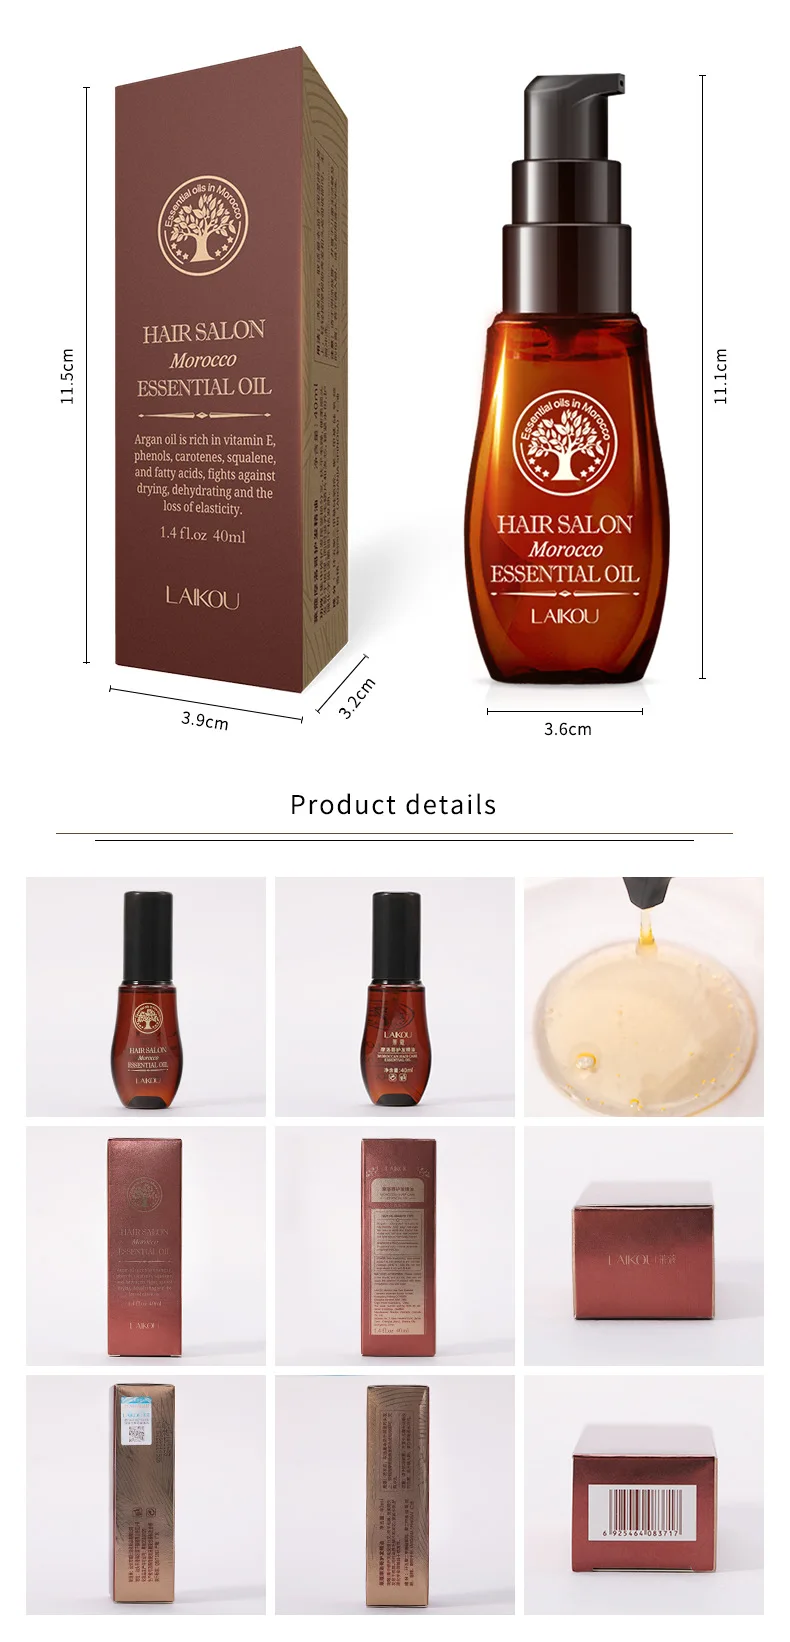 [40 мл] бренд laikou марокканское масло для волос эфирное масло для ухода за волосами, восстановление поврежденных секущихся волос, сухость, тупость, неровность, перхоти, завивка волос